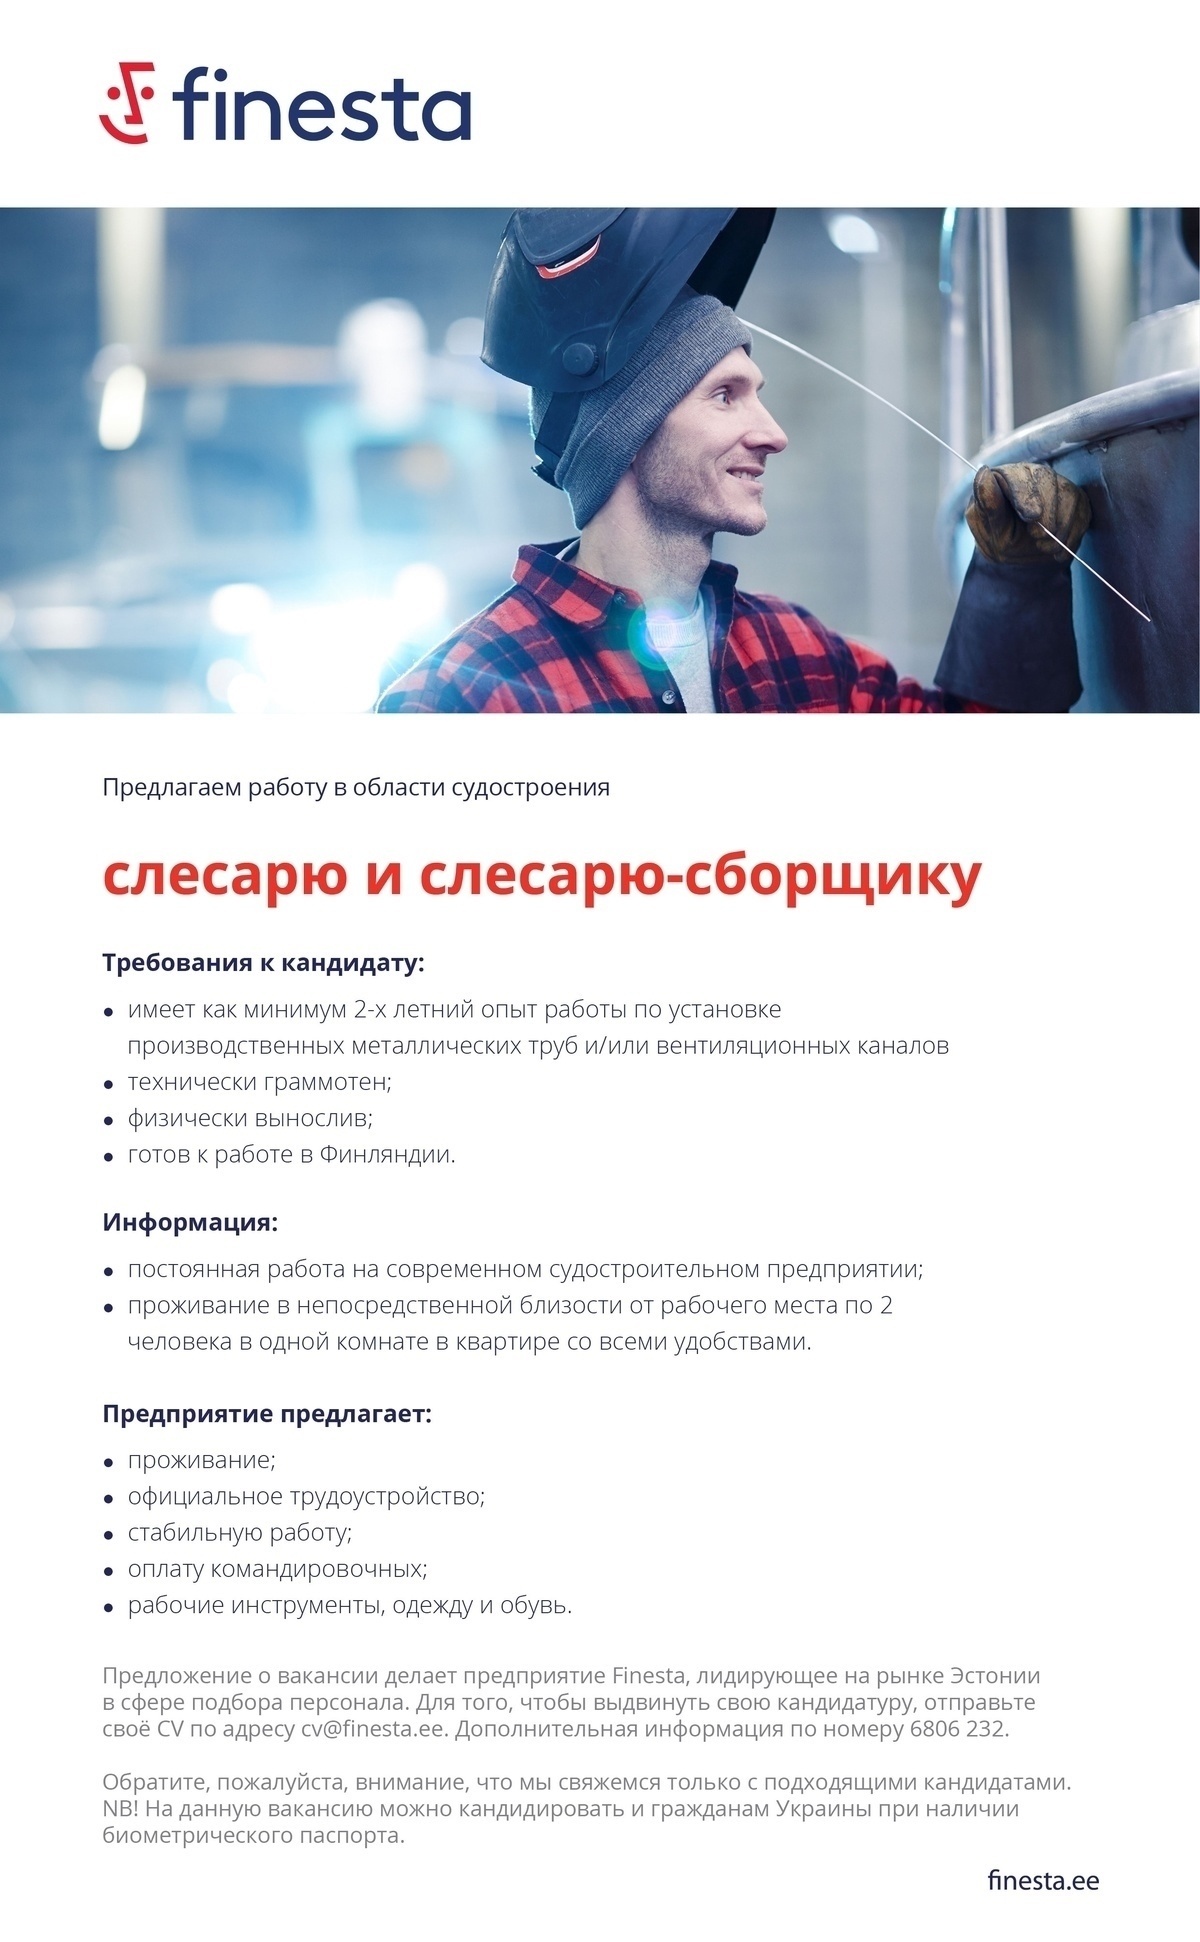 Finesta Baltic OÜ Обслуживание клиентов в интернет-магазине